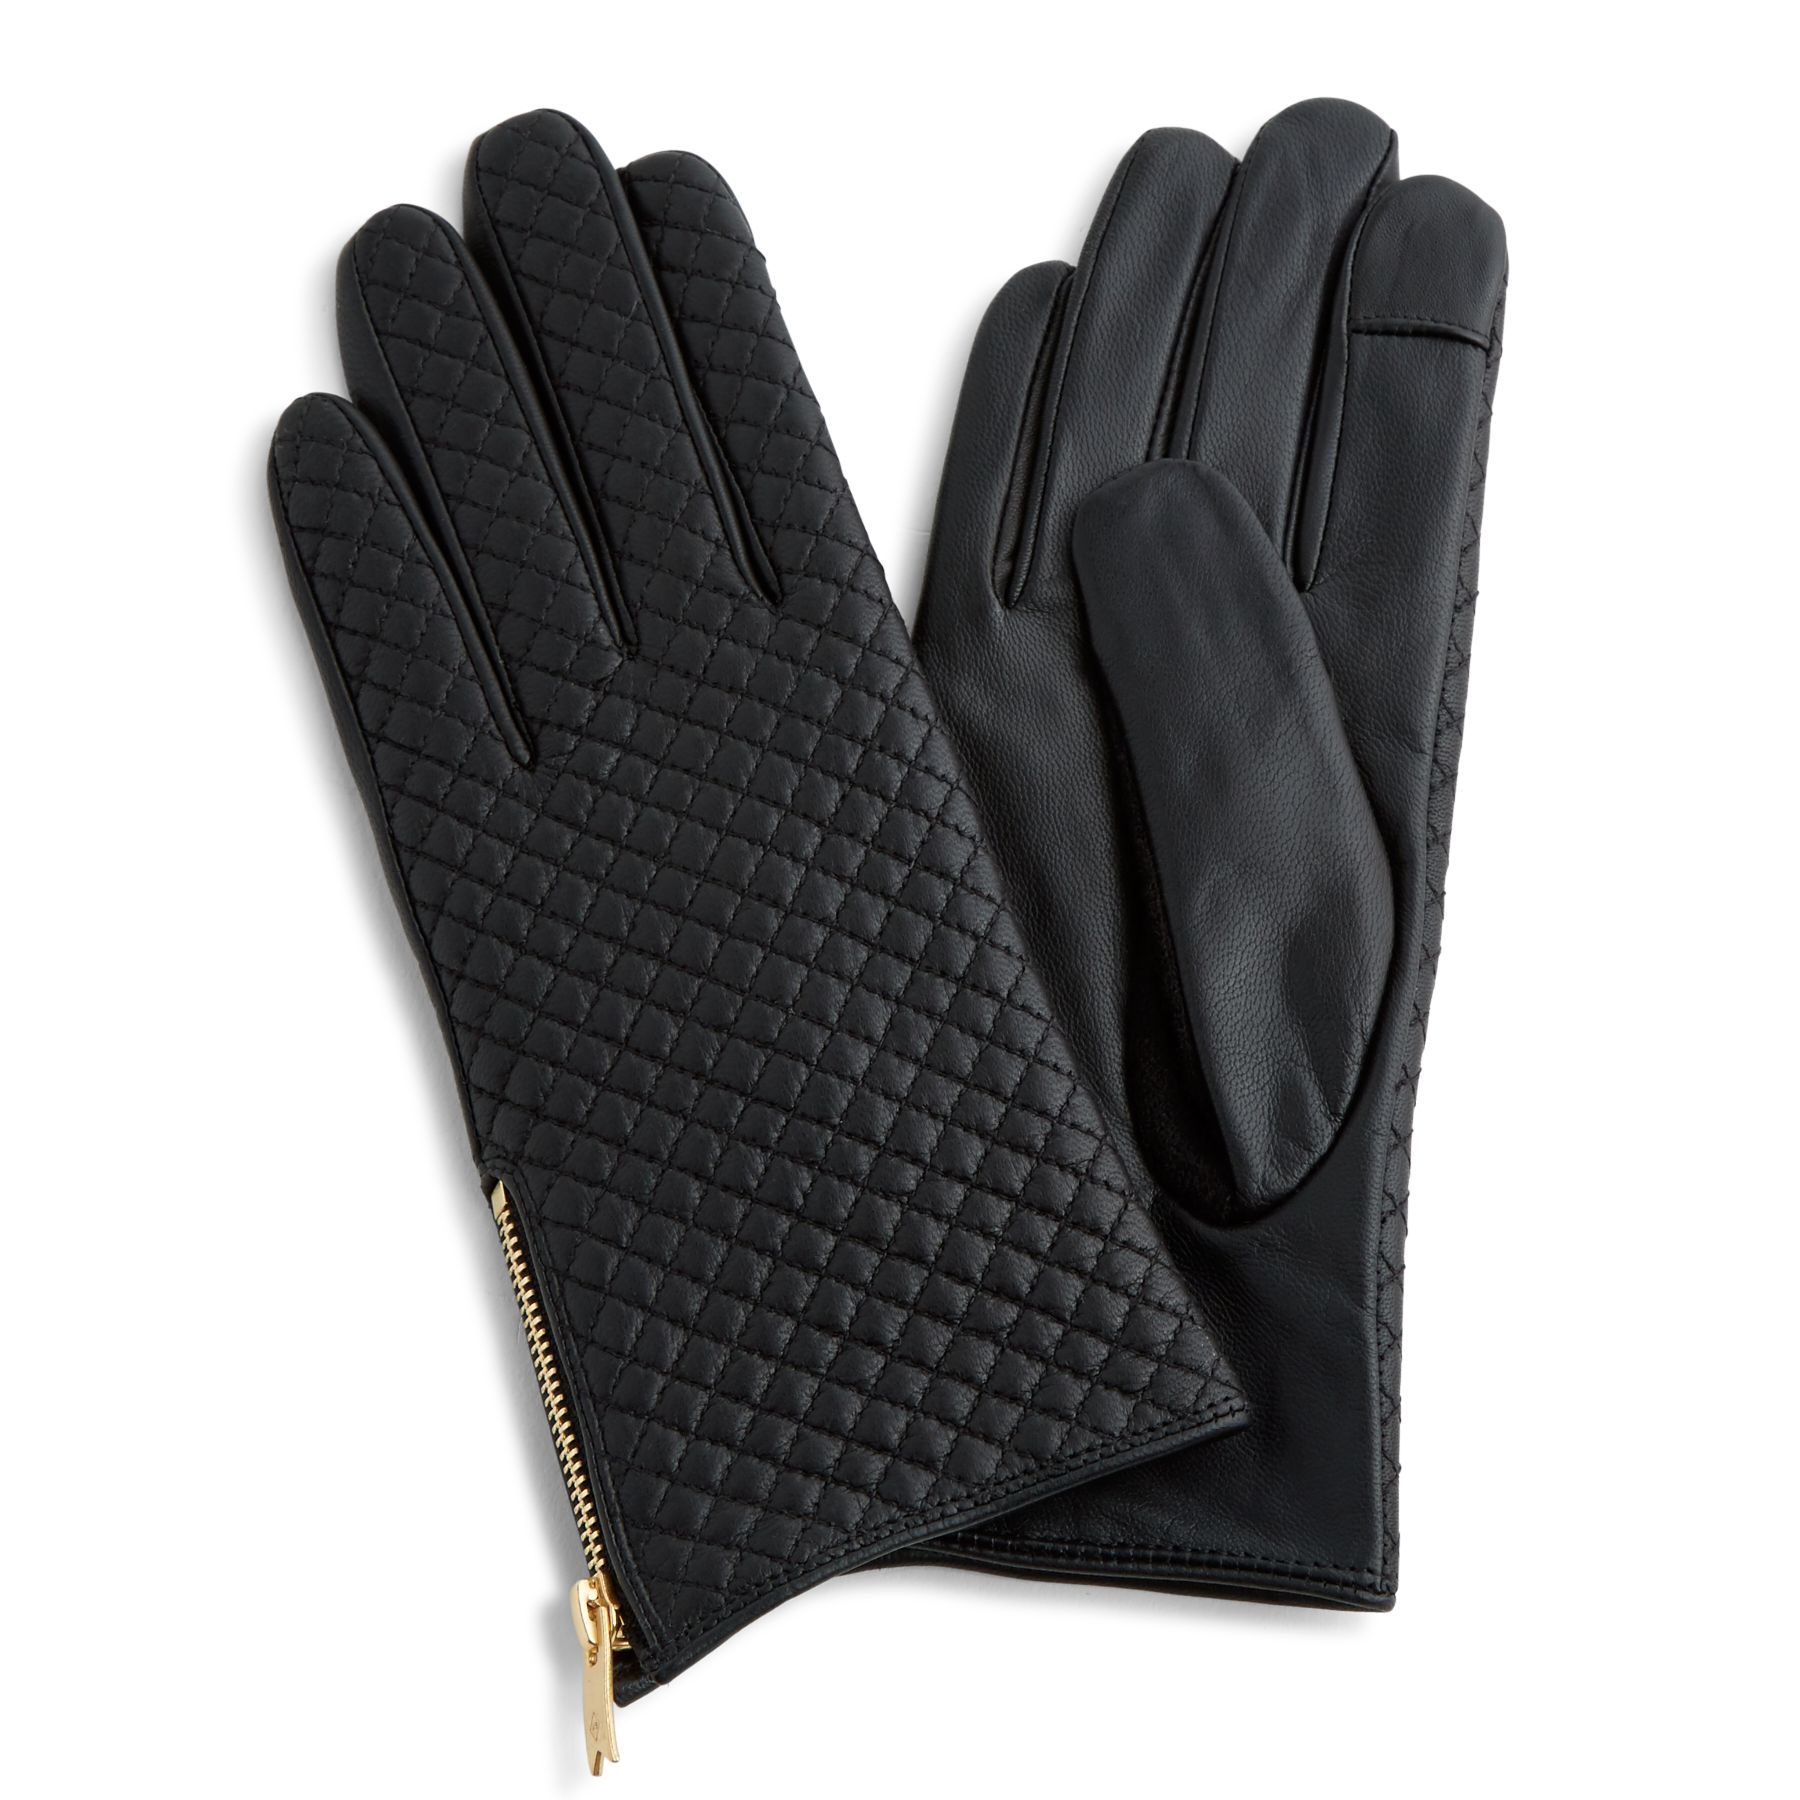 Vera Bradley Leather Gloves in Black | Vera Bradley